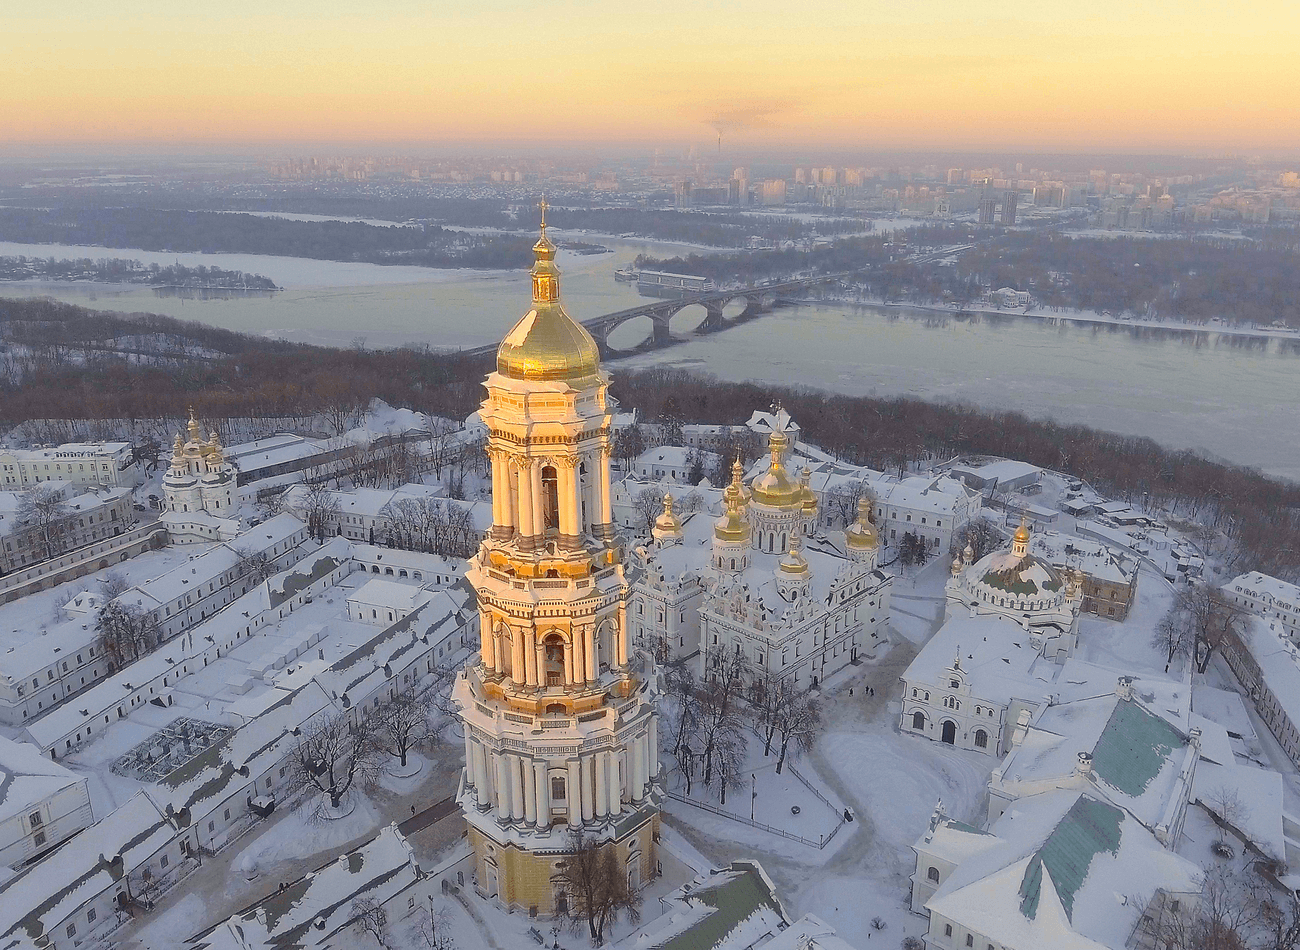 UKRAYNA-KİEV / Listemizdeki bir başka başkent ise Kiev. Dnipro Nehri’nin donması ile muhteşem manzaralar ortaya çıkıyor. Sadece Kiev değil, Ukrayna’nın genel olarak ucuz bir ülke olduğunu söylenebilir.